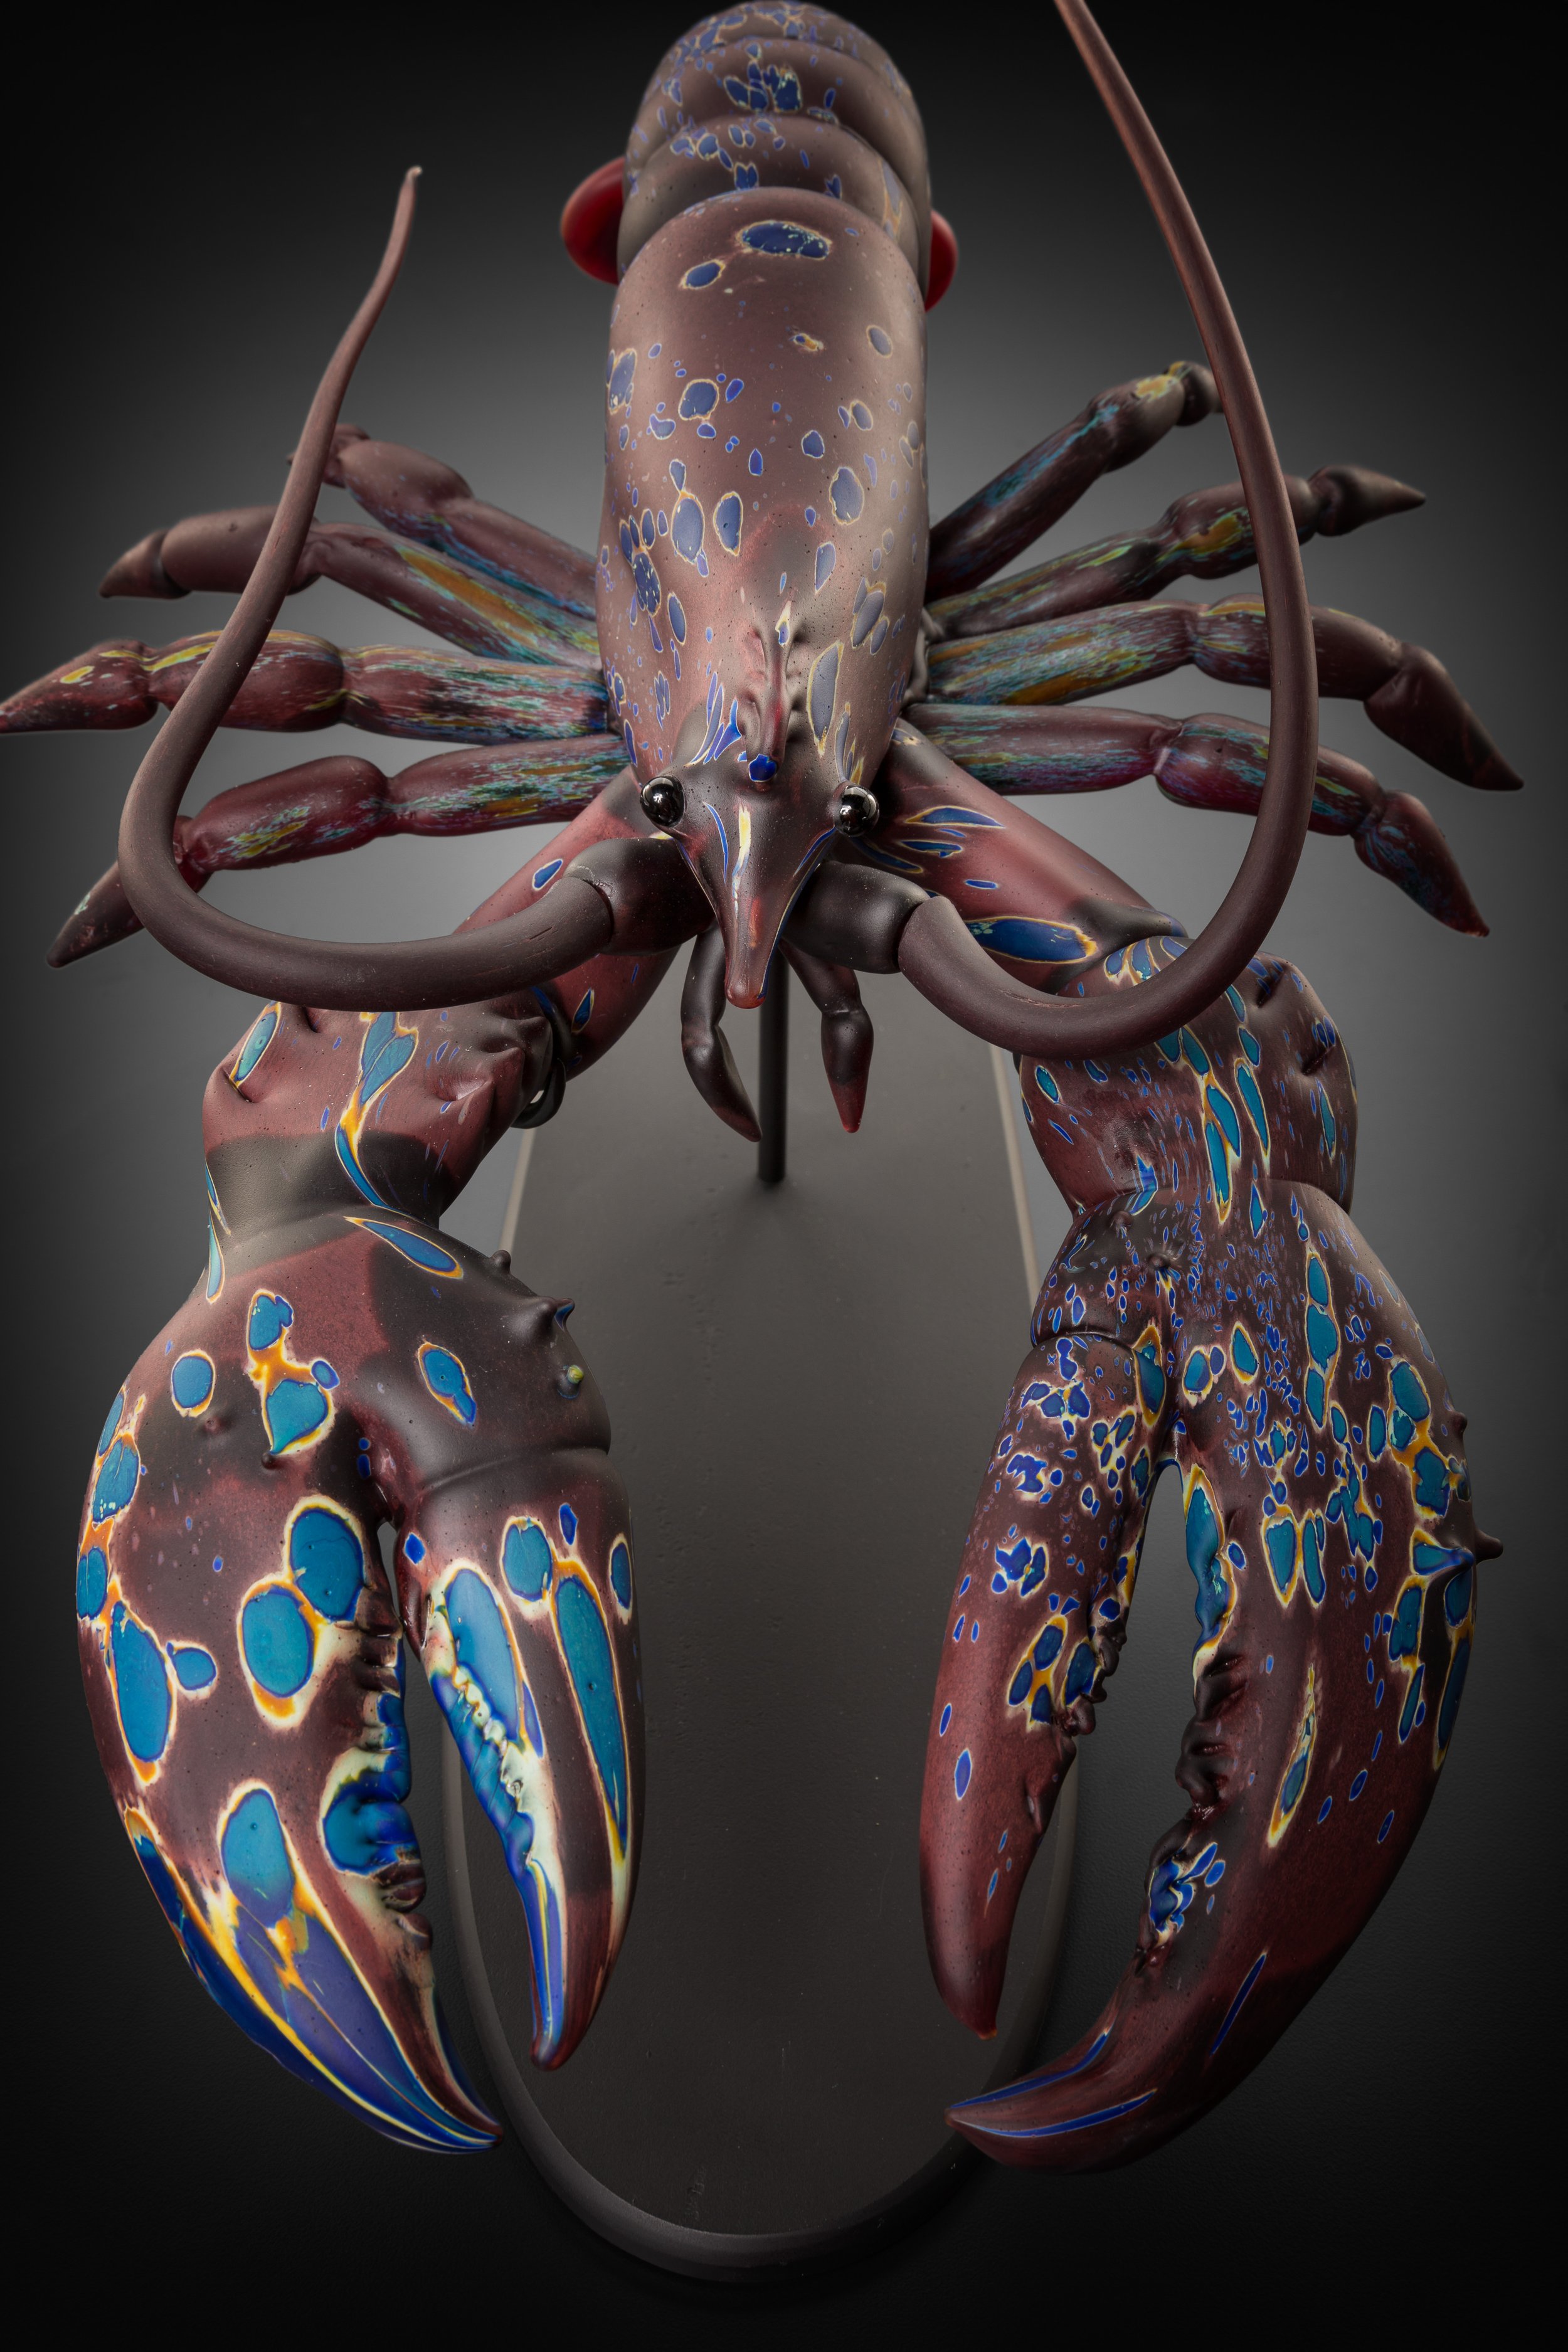 glass-sculpture-lobster-burgundy-cobalt-detachable-antennae-kelly-odell-3.jpg